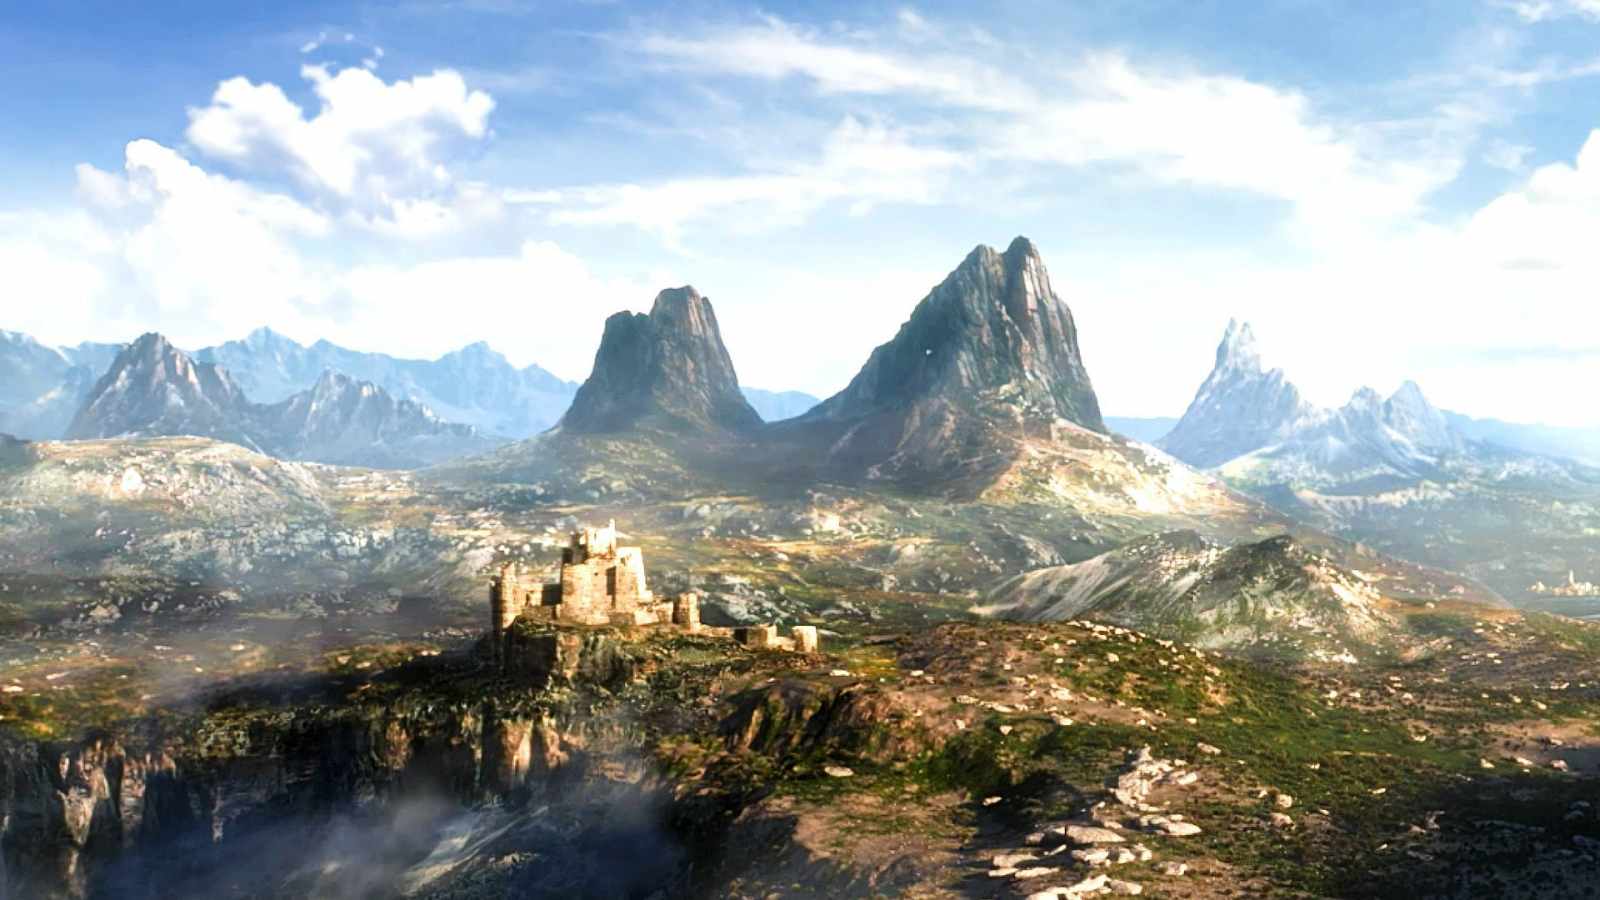 The Elder Scrolls 6 is officially in early development